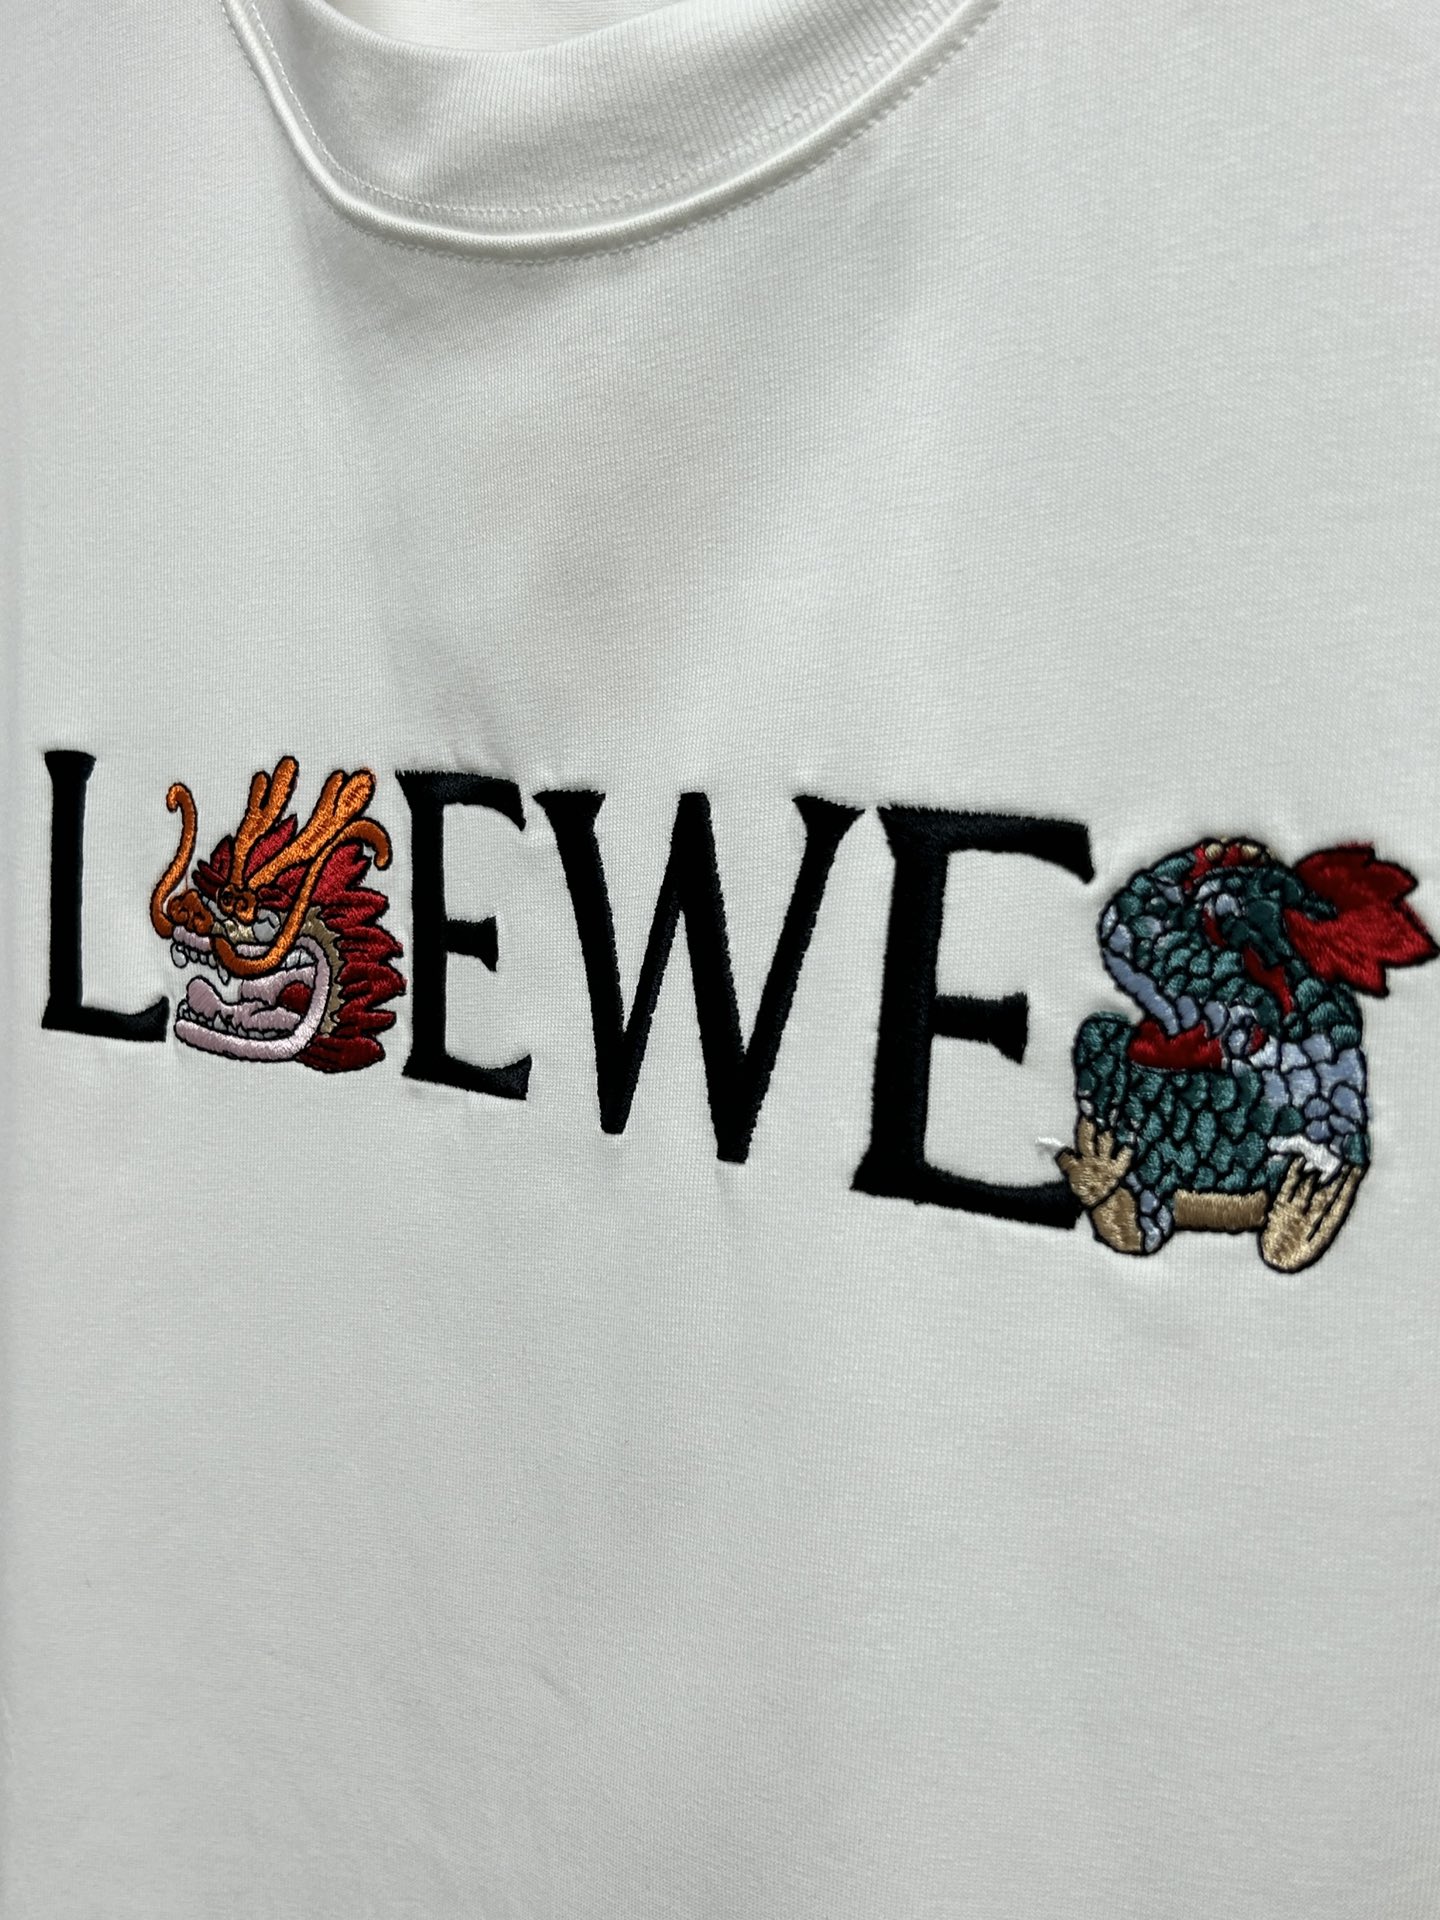 早春新款LOE龙年限定LOGO刺绣圆领短袖原版1:1订制全进口原版定制欢迎专柜对比绝对的高品质面料做工杠